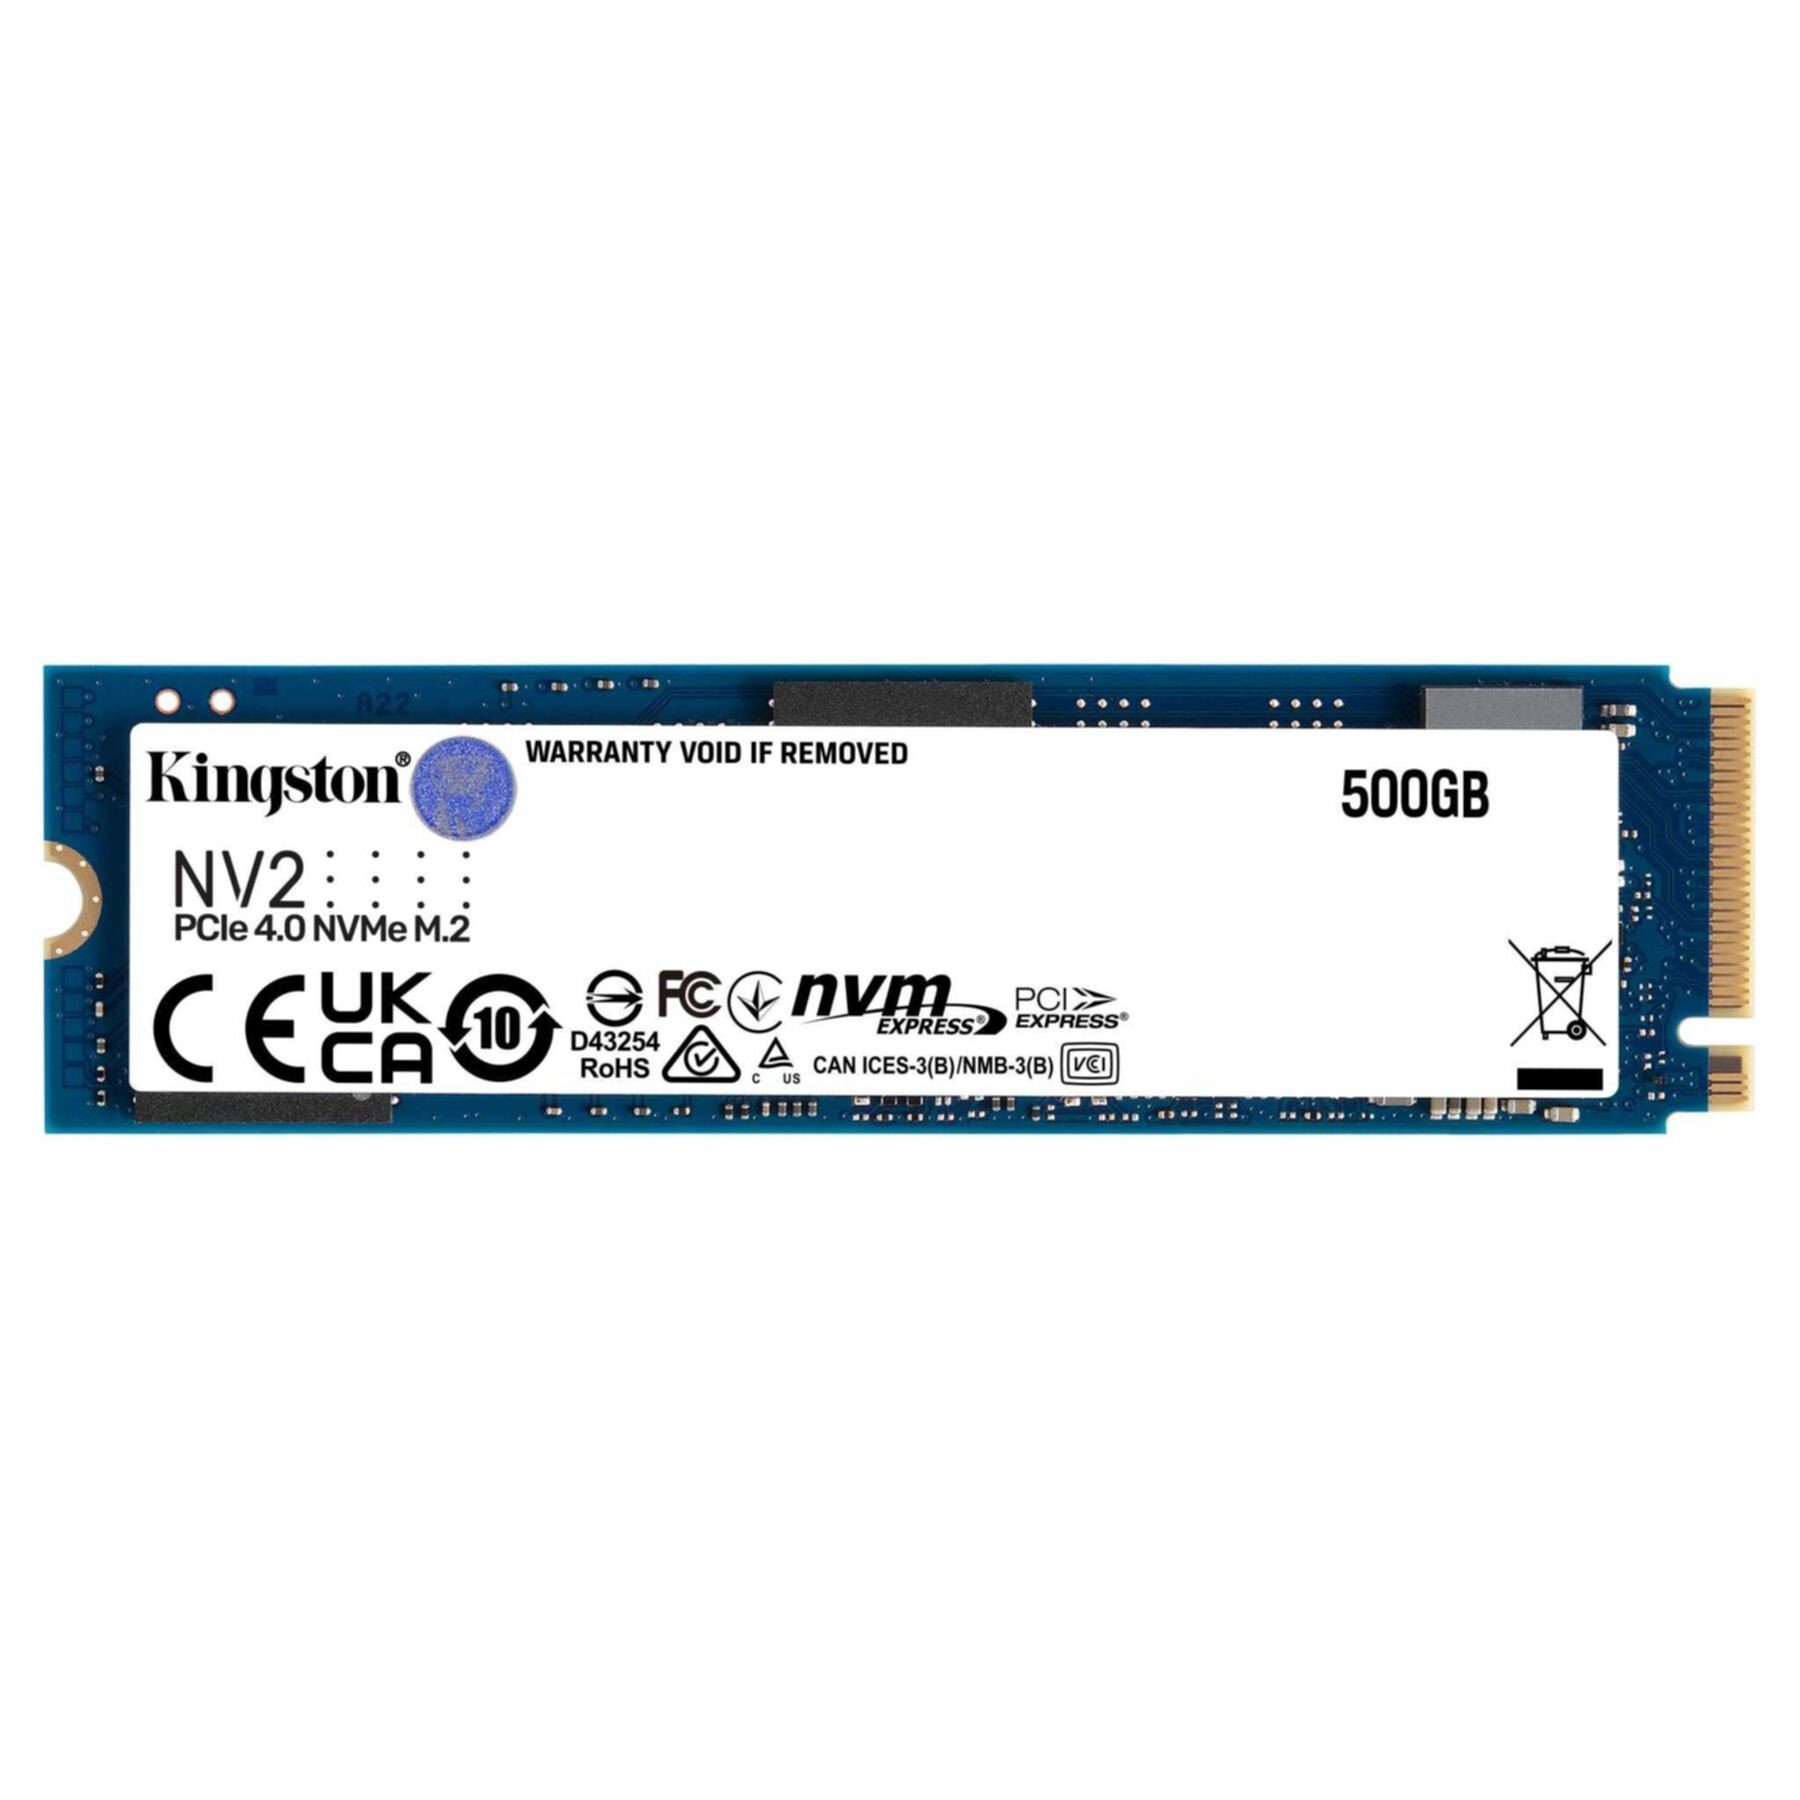 GB) (500 NV2 PCIe SSD MB/S NVMe MB/S Kingston interne Schnittstelle: 2100 Schreibgeschwindigkeit, Express Lesegeschwindigkeit, 500GB 3500 PCI SSD